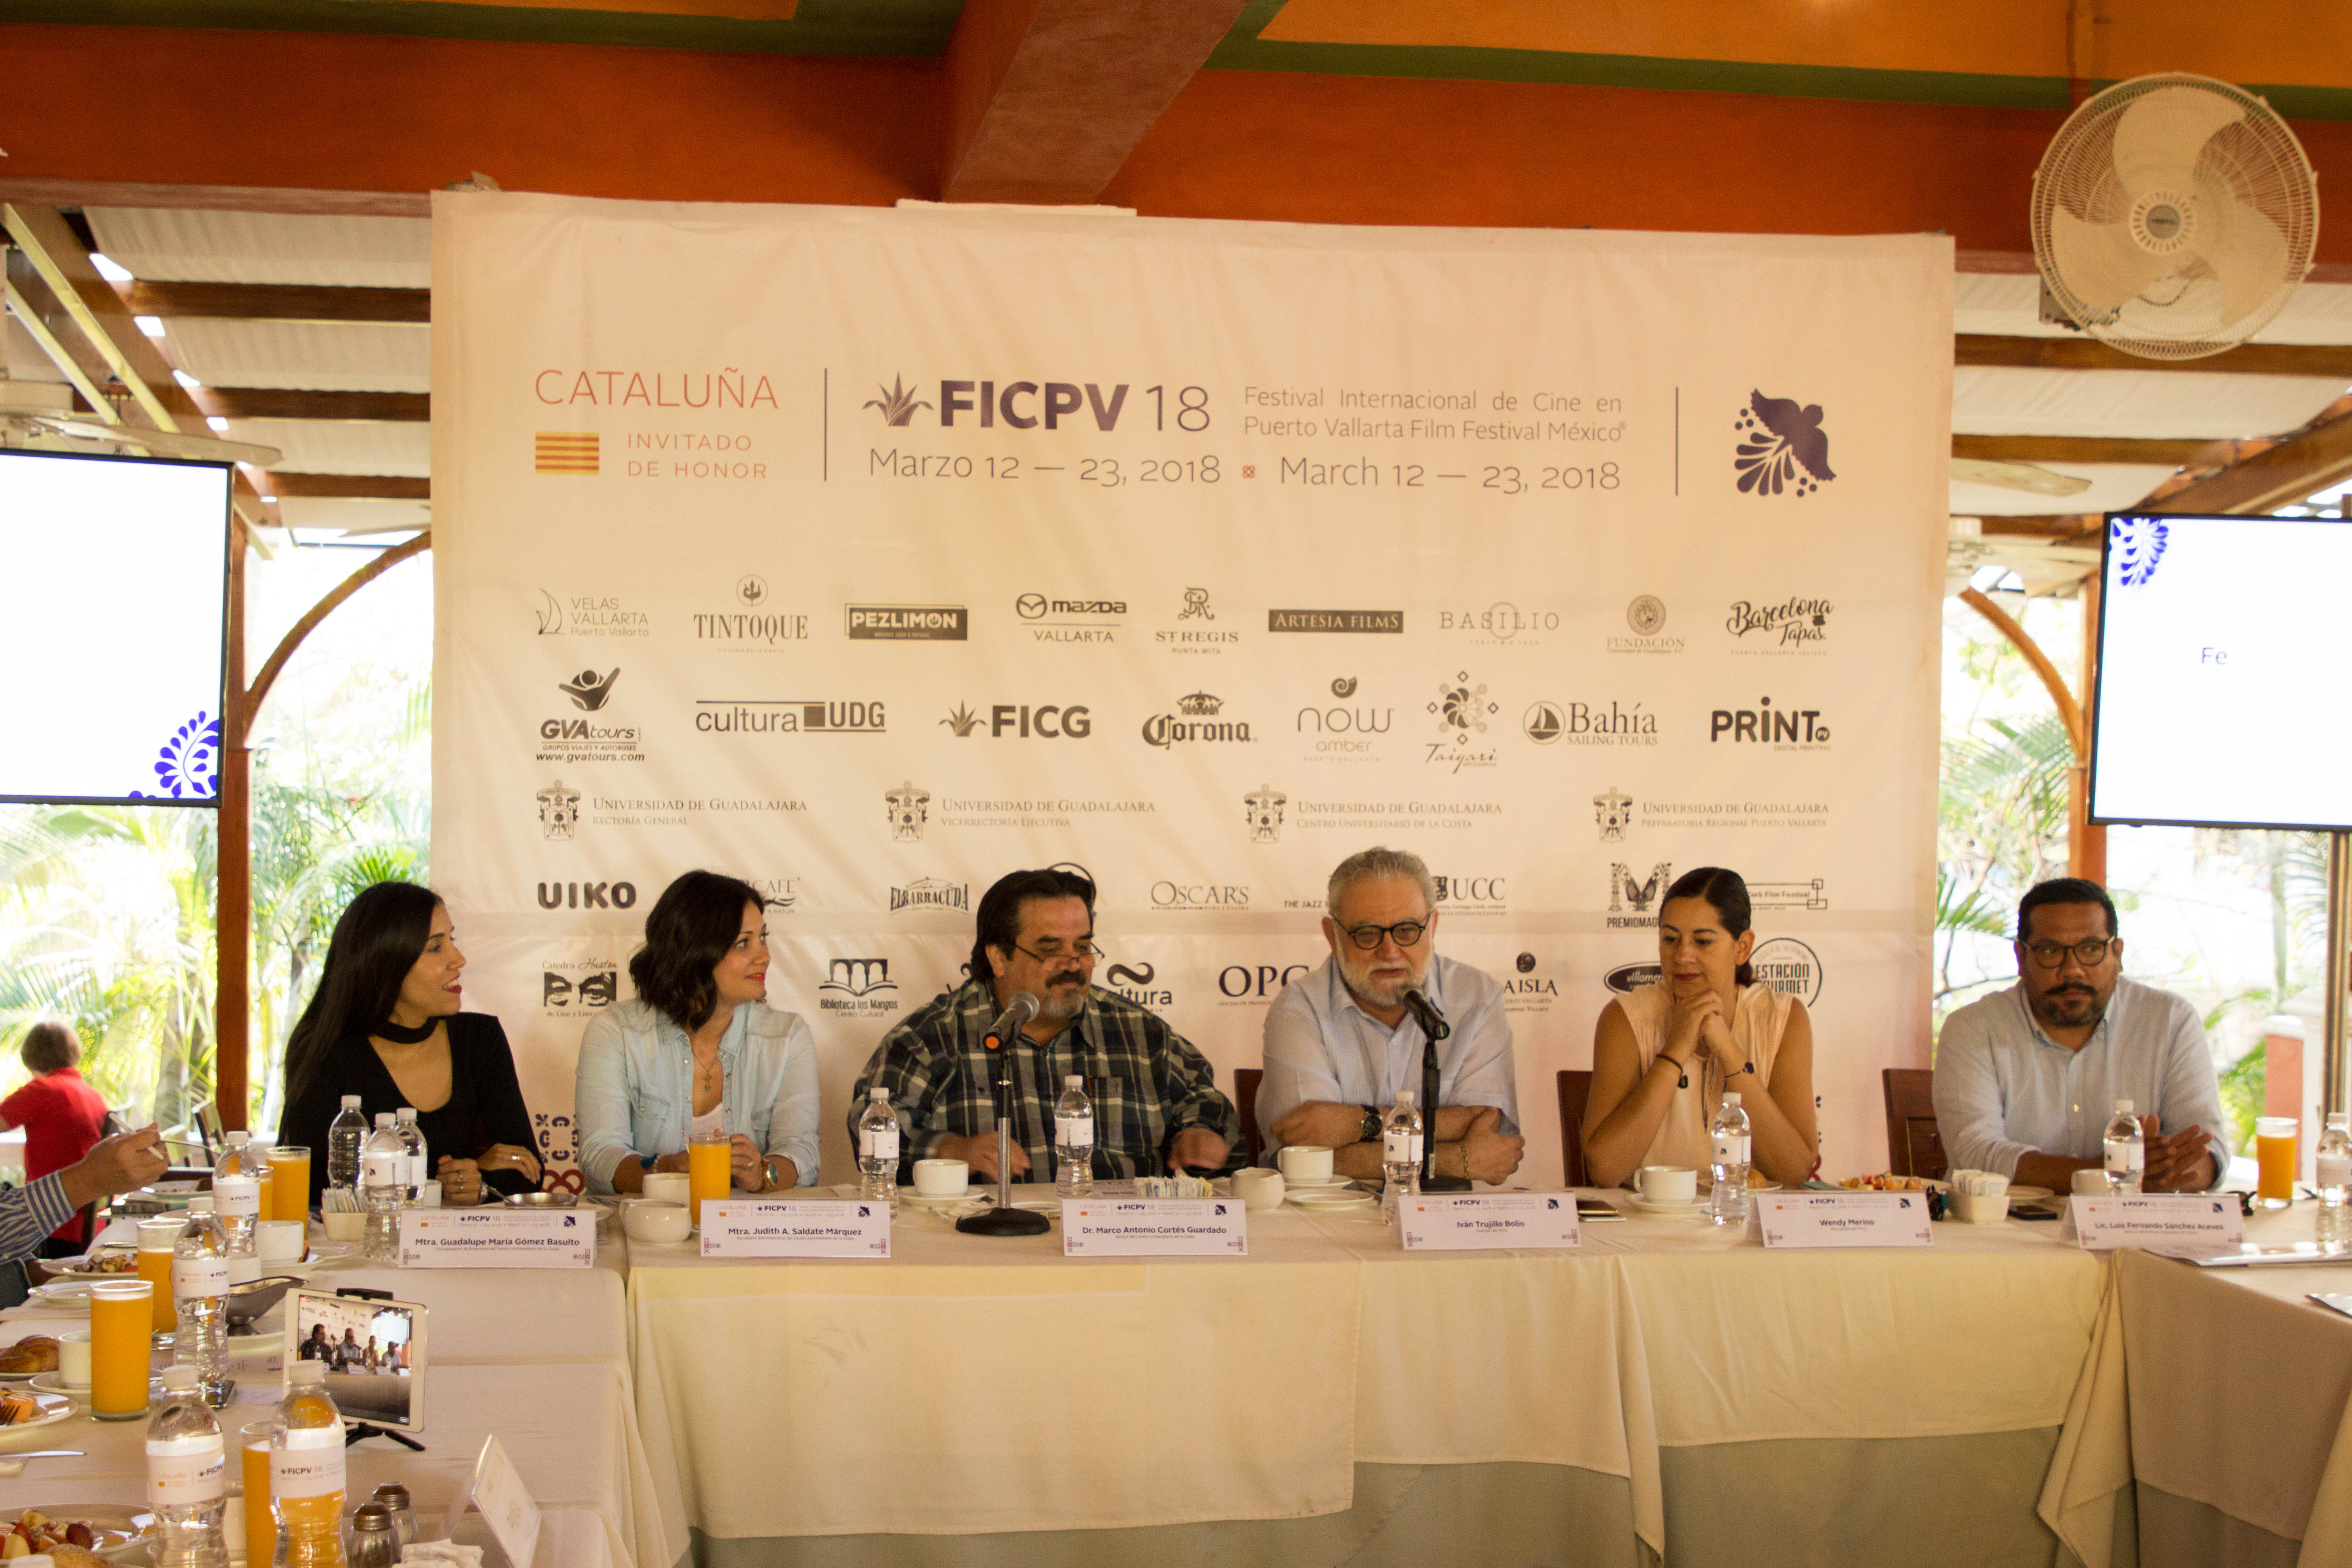 Cataluña es el invitado de honor en la edición 18 del FICPV